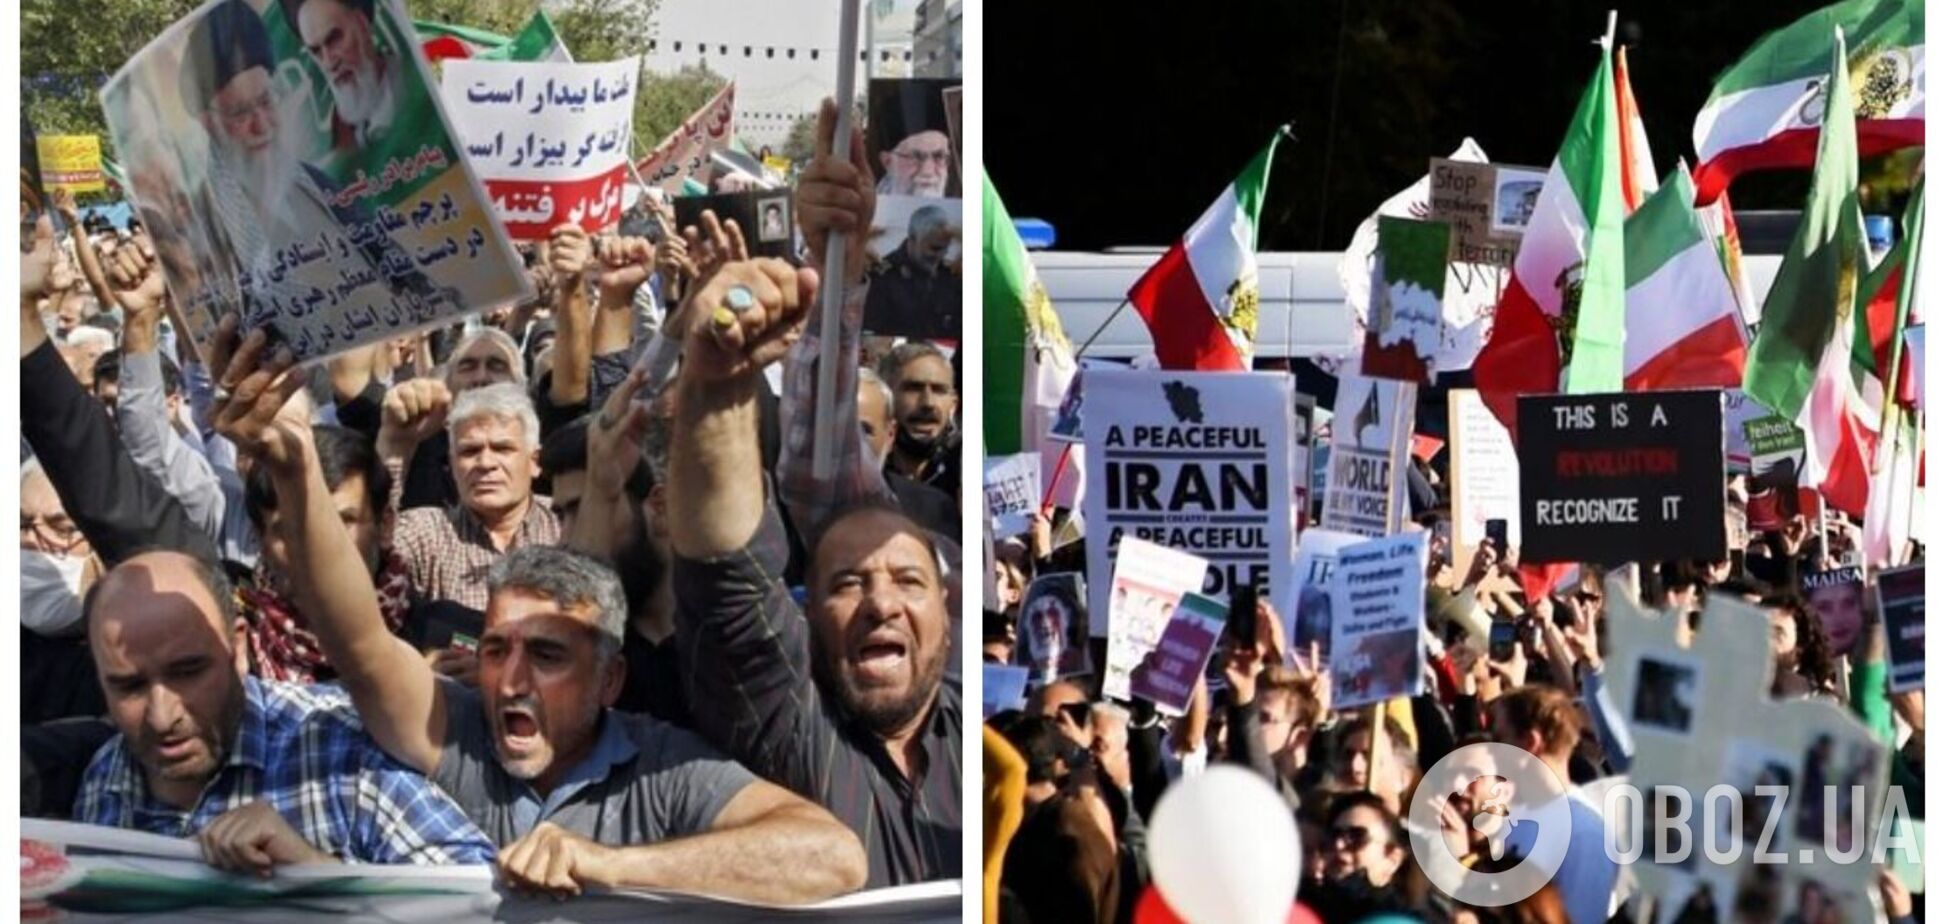 Обвинили в 'ведении войны против Бога': в Иране казнили участника массовых протестов